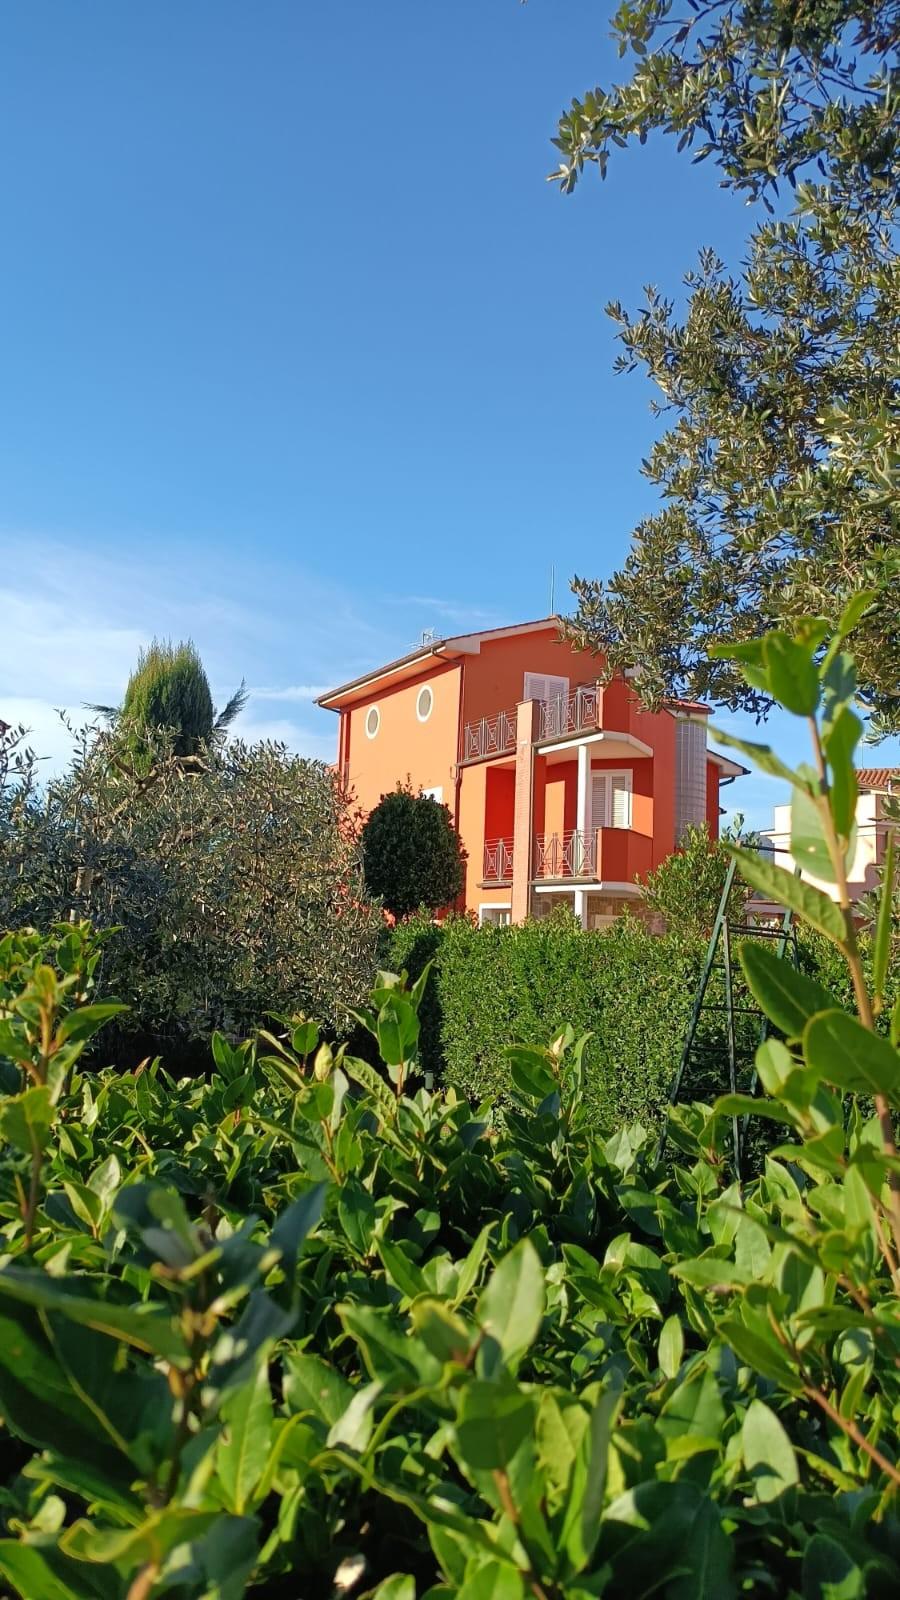 Villa Bifamiliare in vendita a Bientina, 4 locali, prezzo € 290.000 | PortaleAgenzieImmobiliari.it